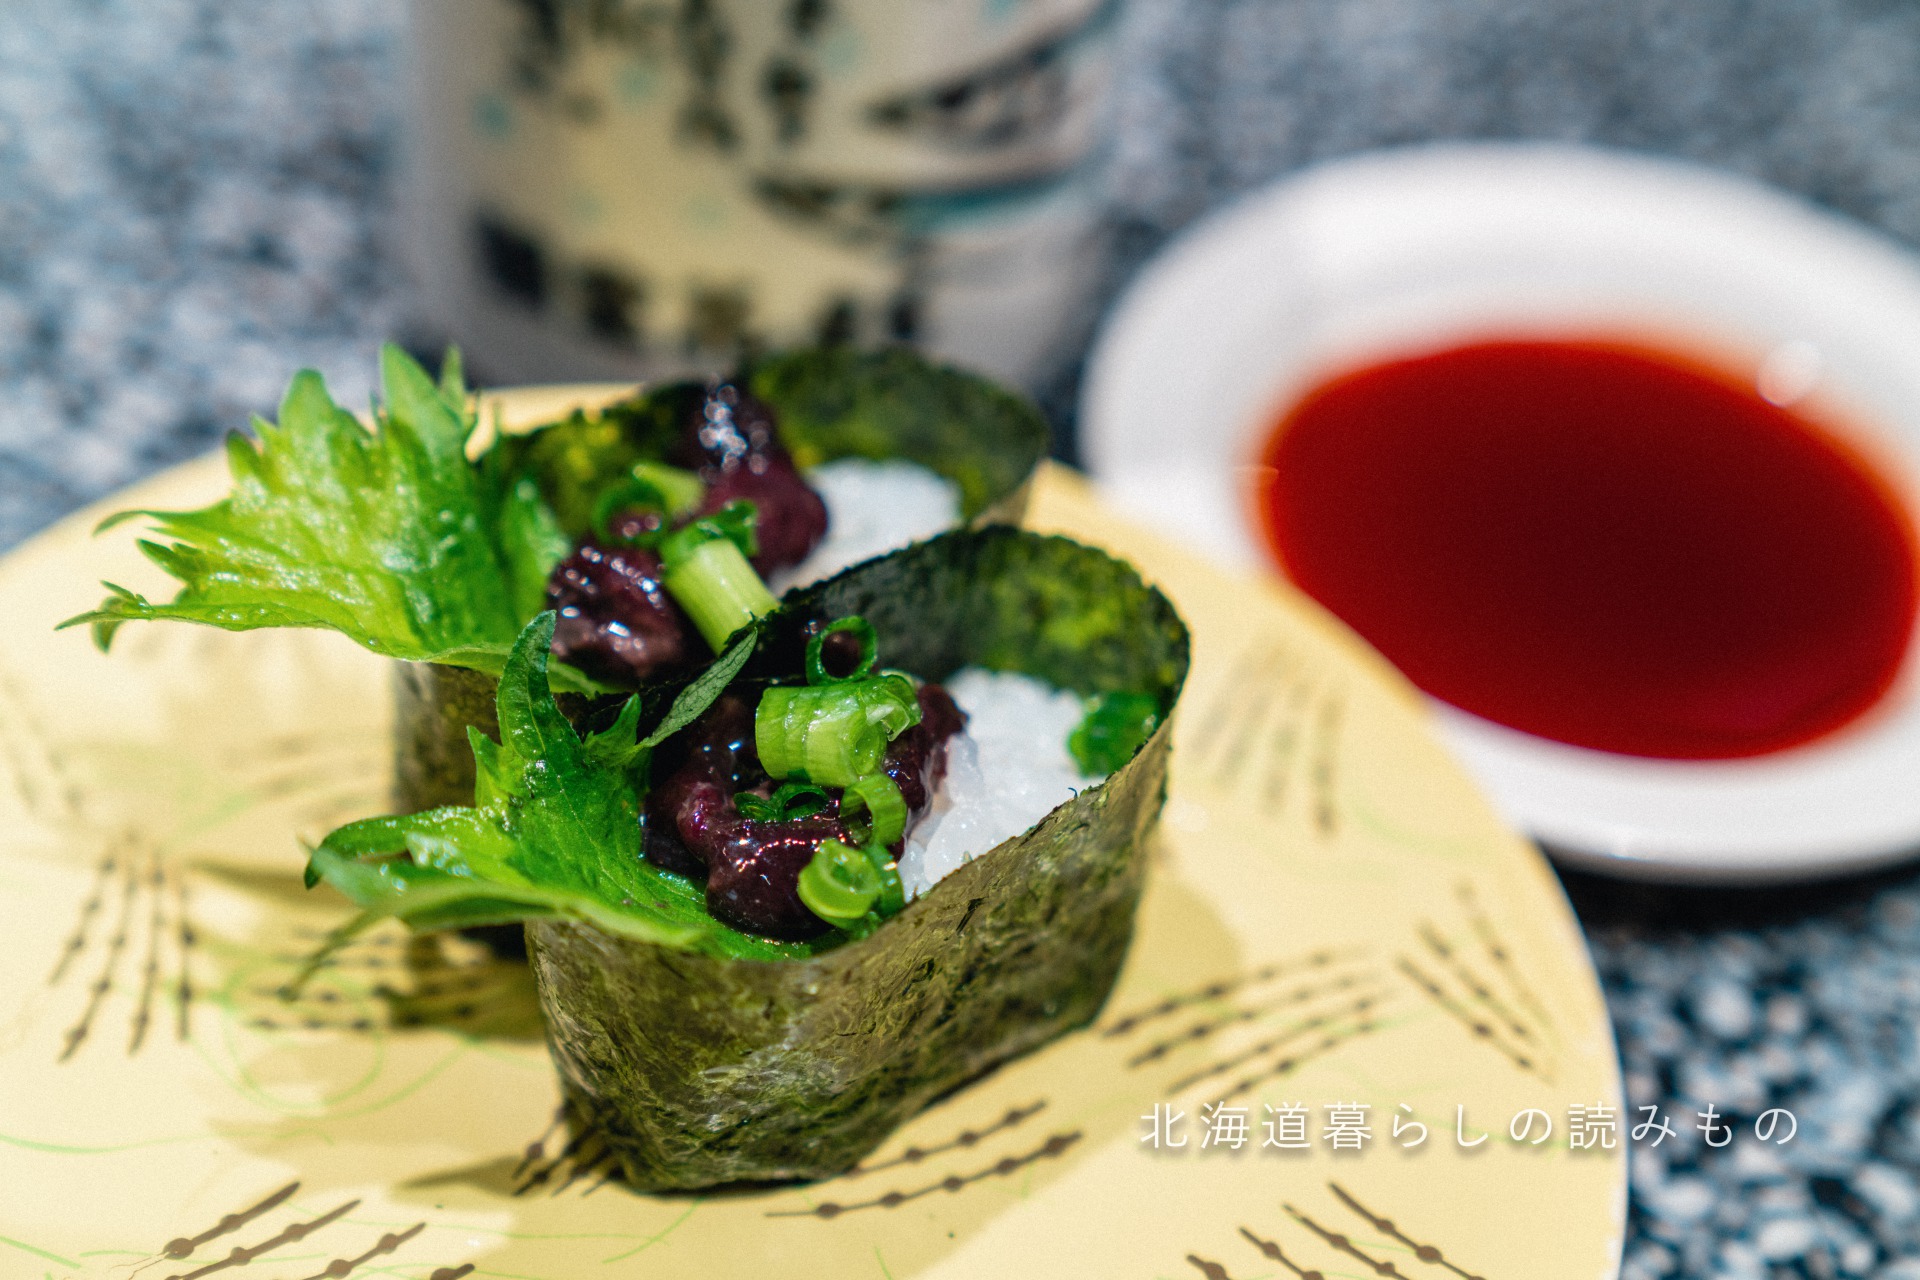 迴轉壽司根室花丸的菜單上的「Salted Salmon Kidney Battleship Sushi (Ainu Cuisine)」